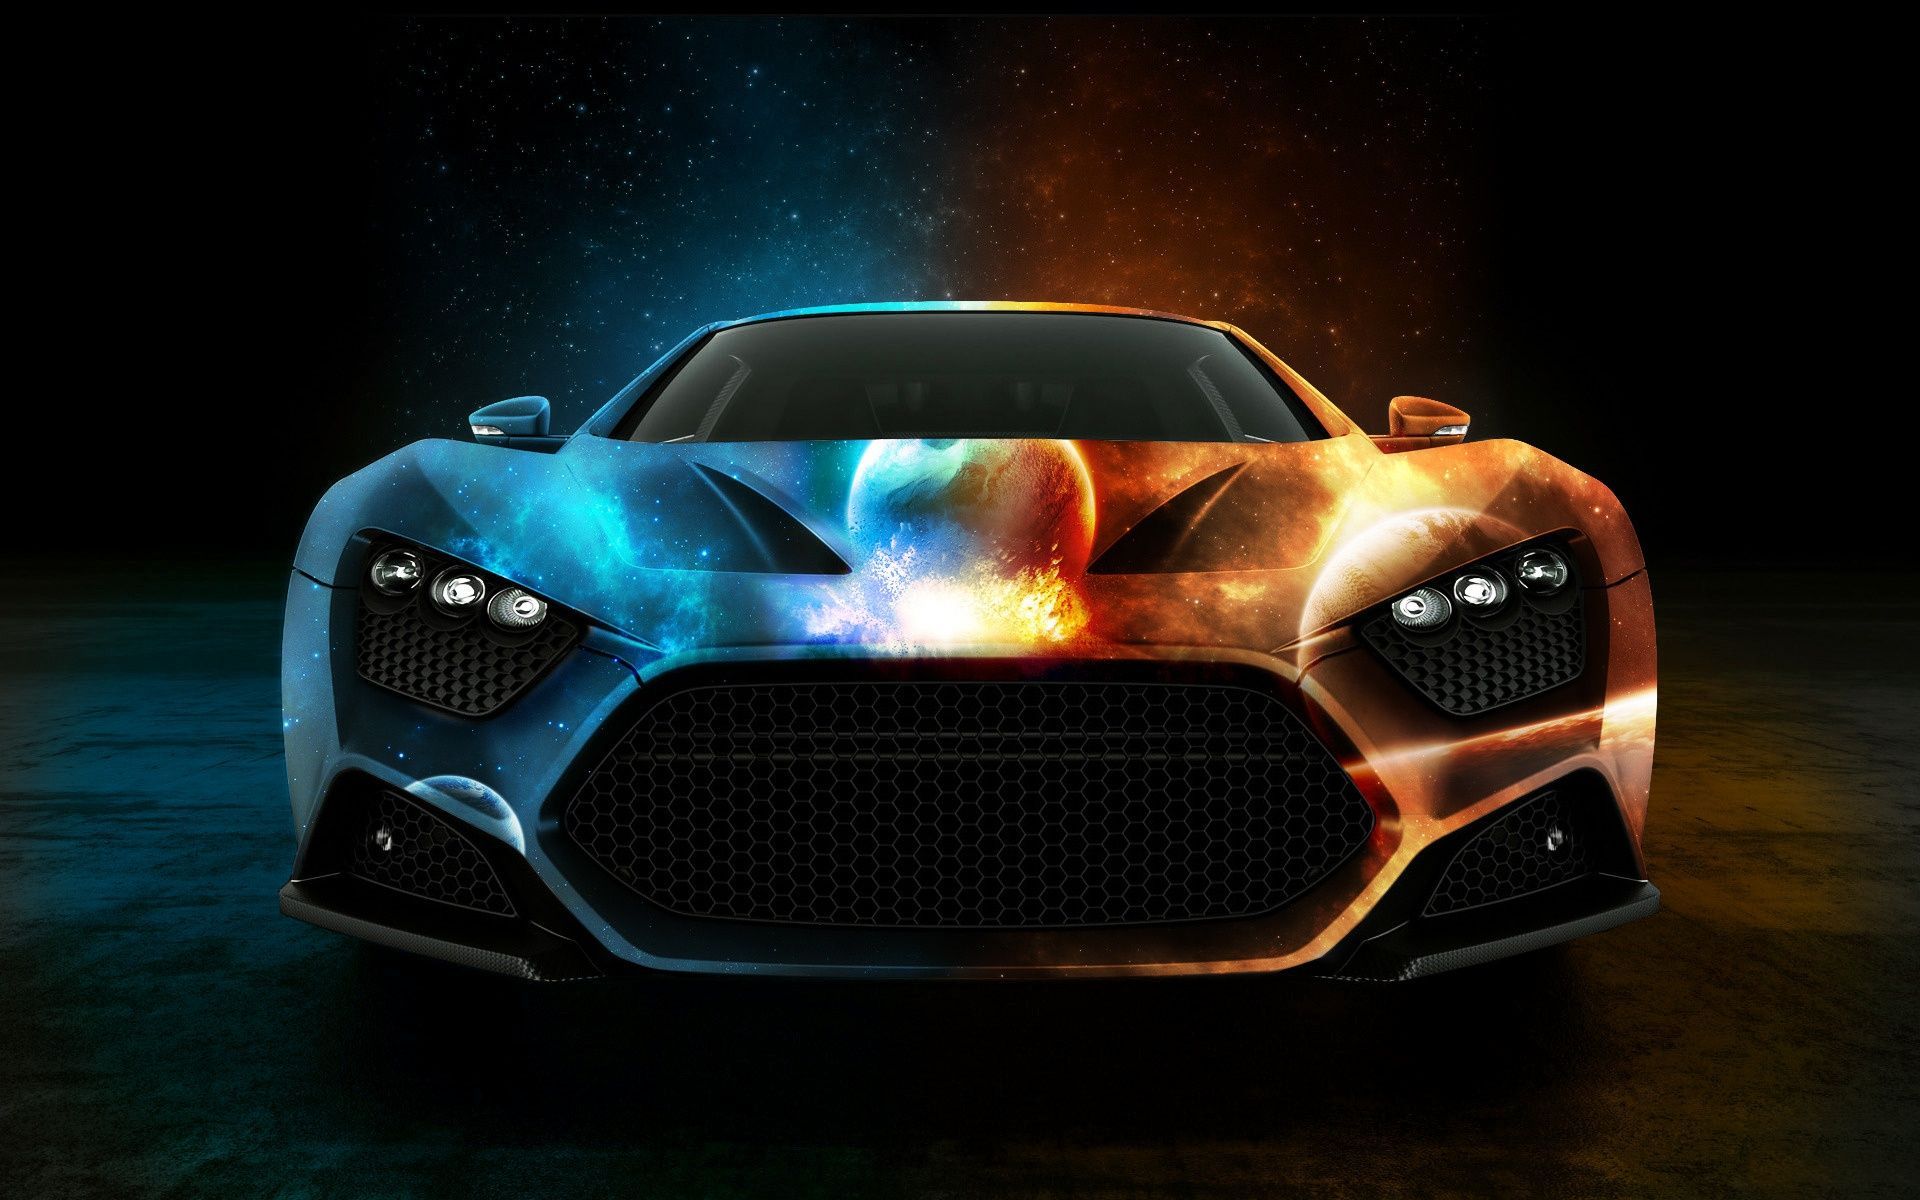 Download Cool Hot Car Wallpaper | Full HD Wallpapers